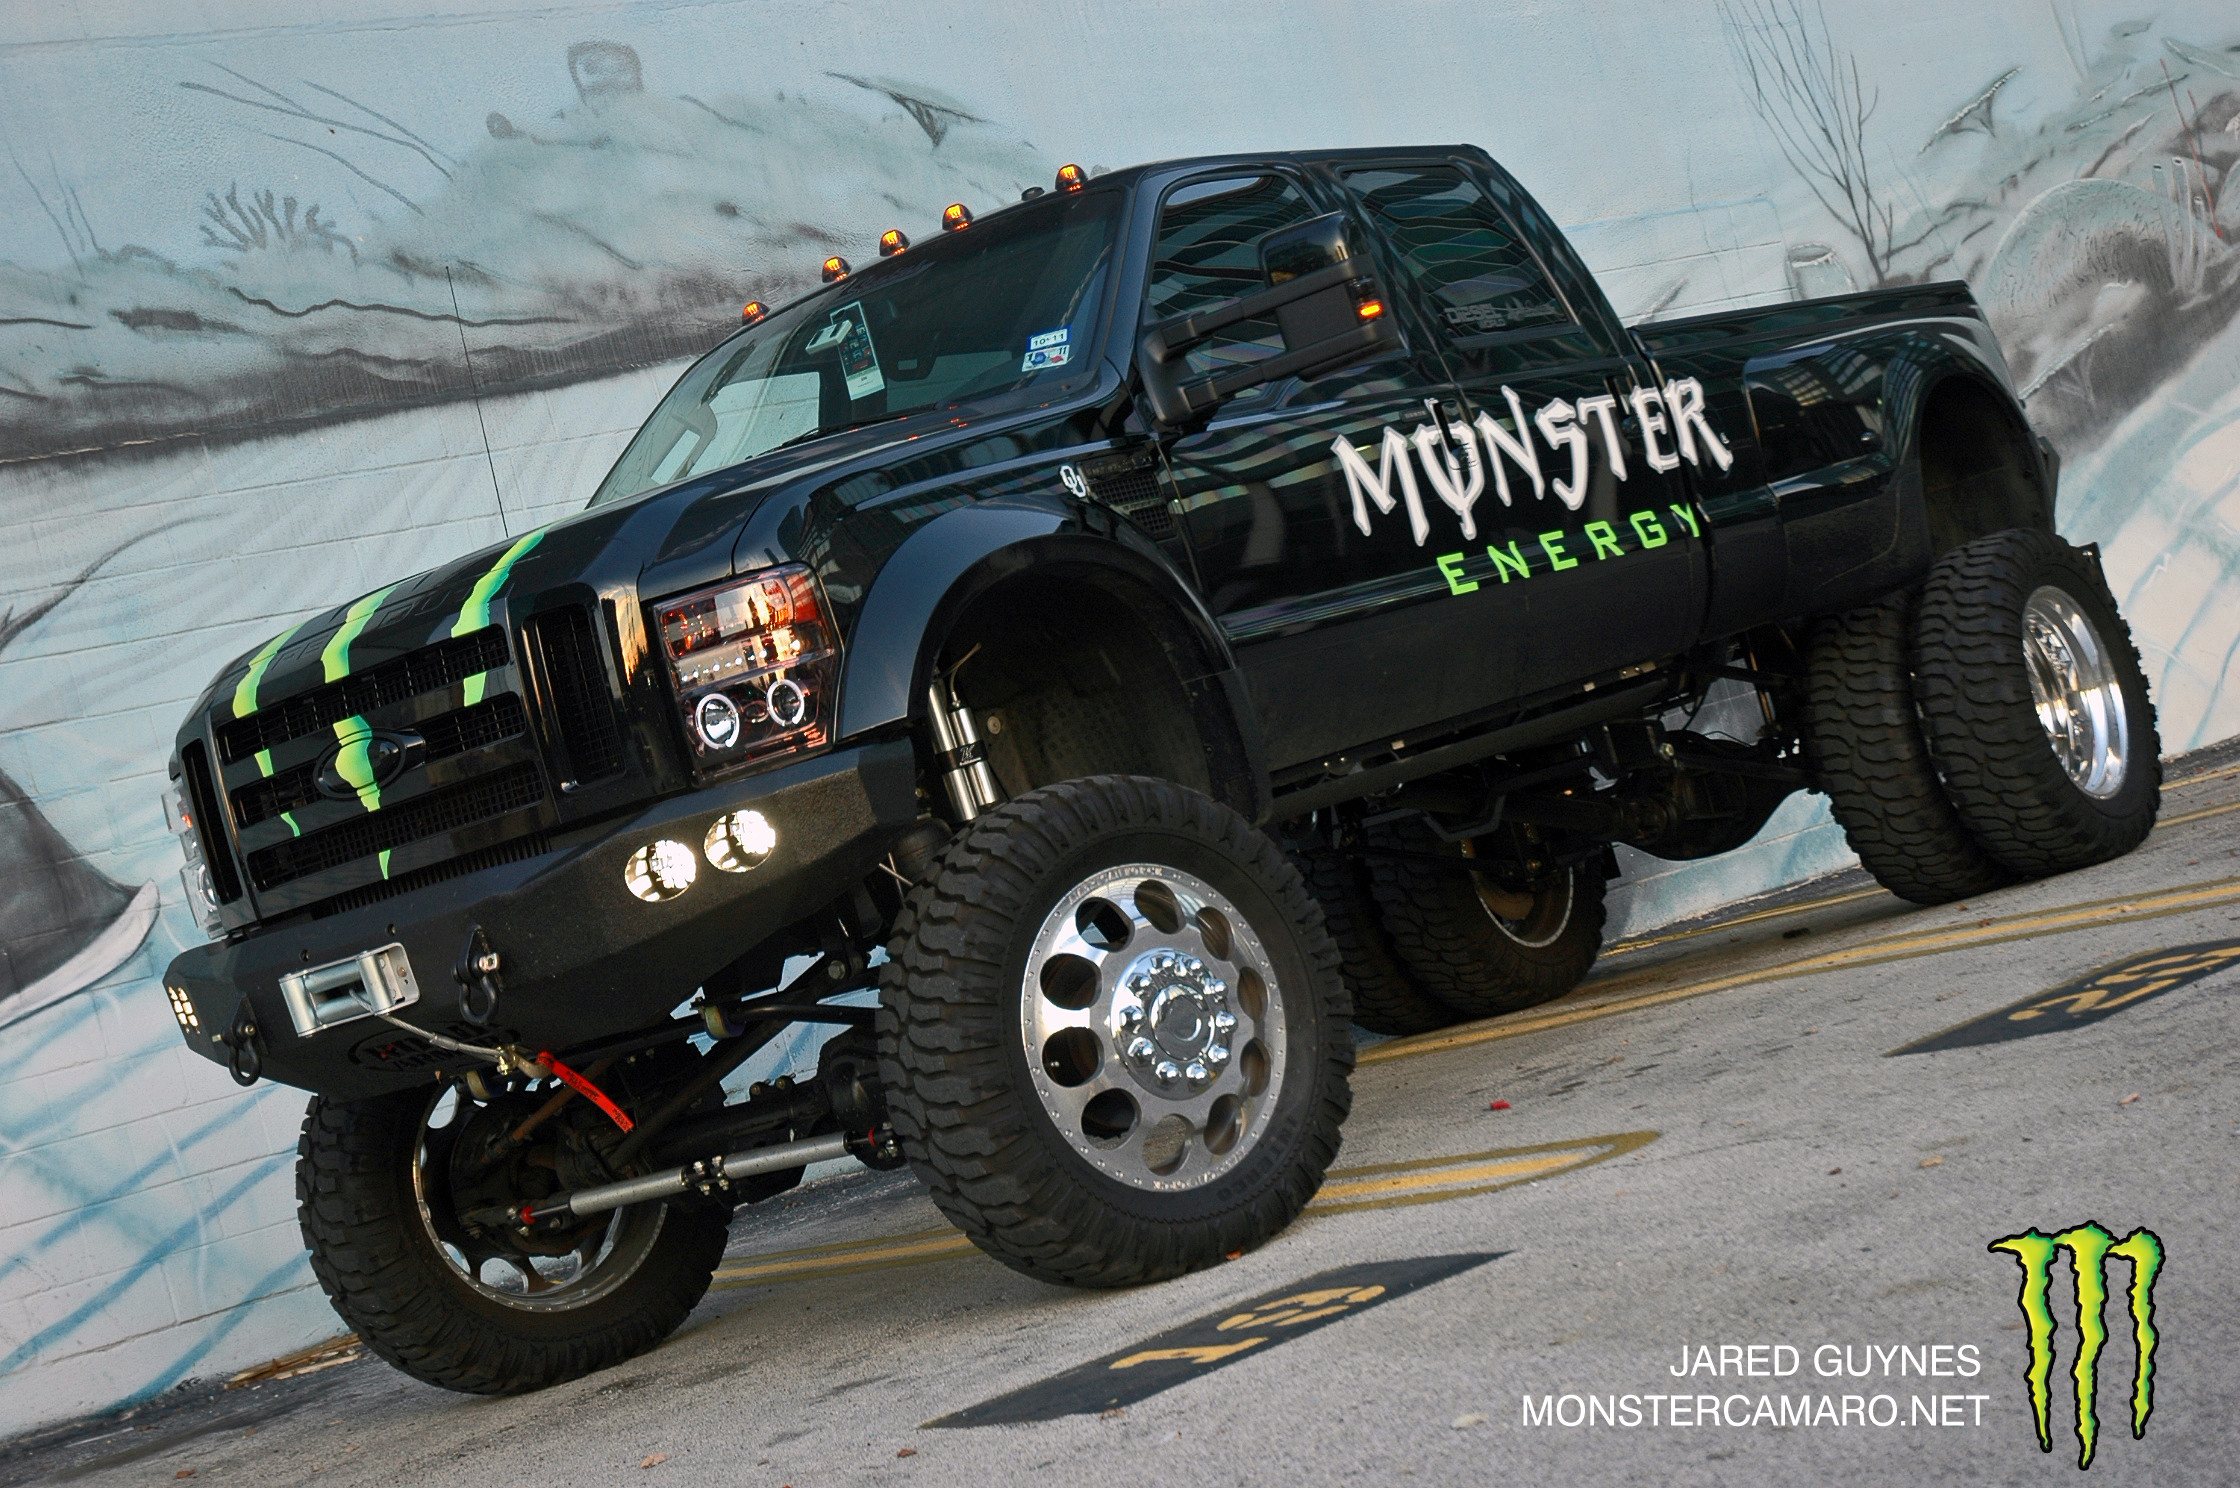 2240x1488 trucks | Monster Camaro + Monster F-450 Wallpapers | Monster Camaro Dot Net